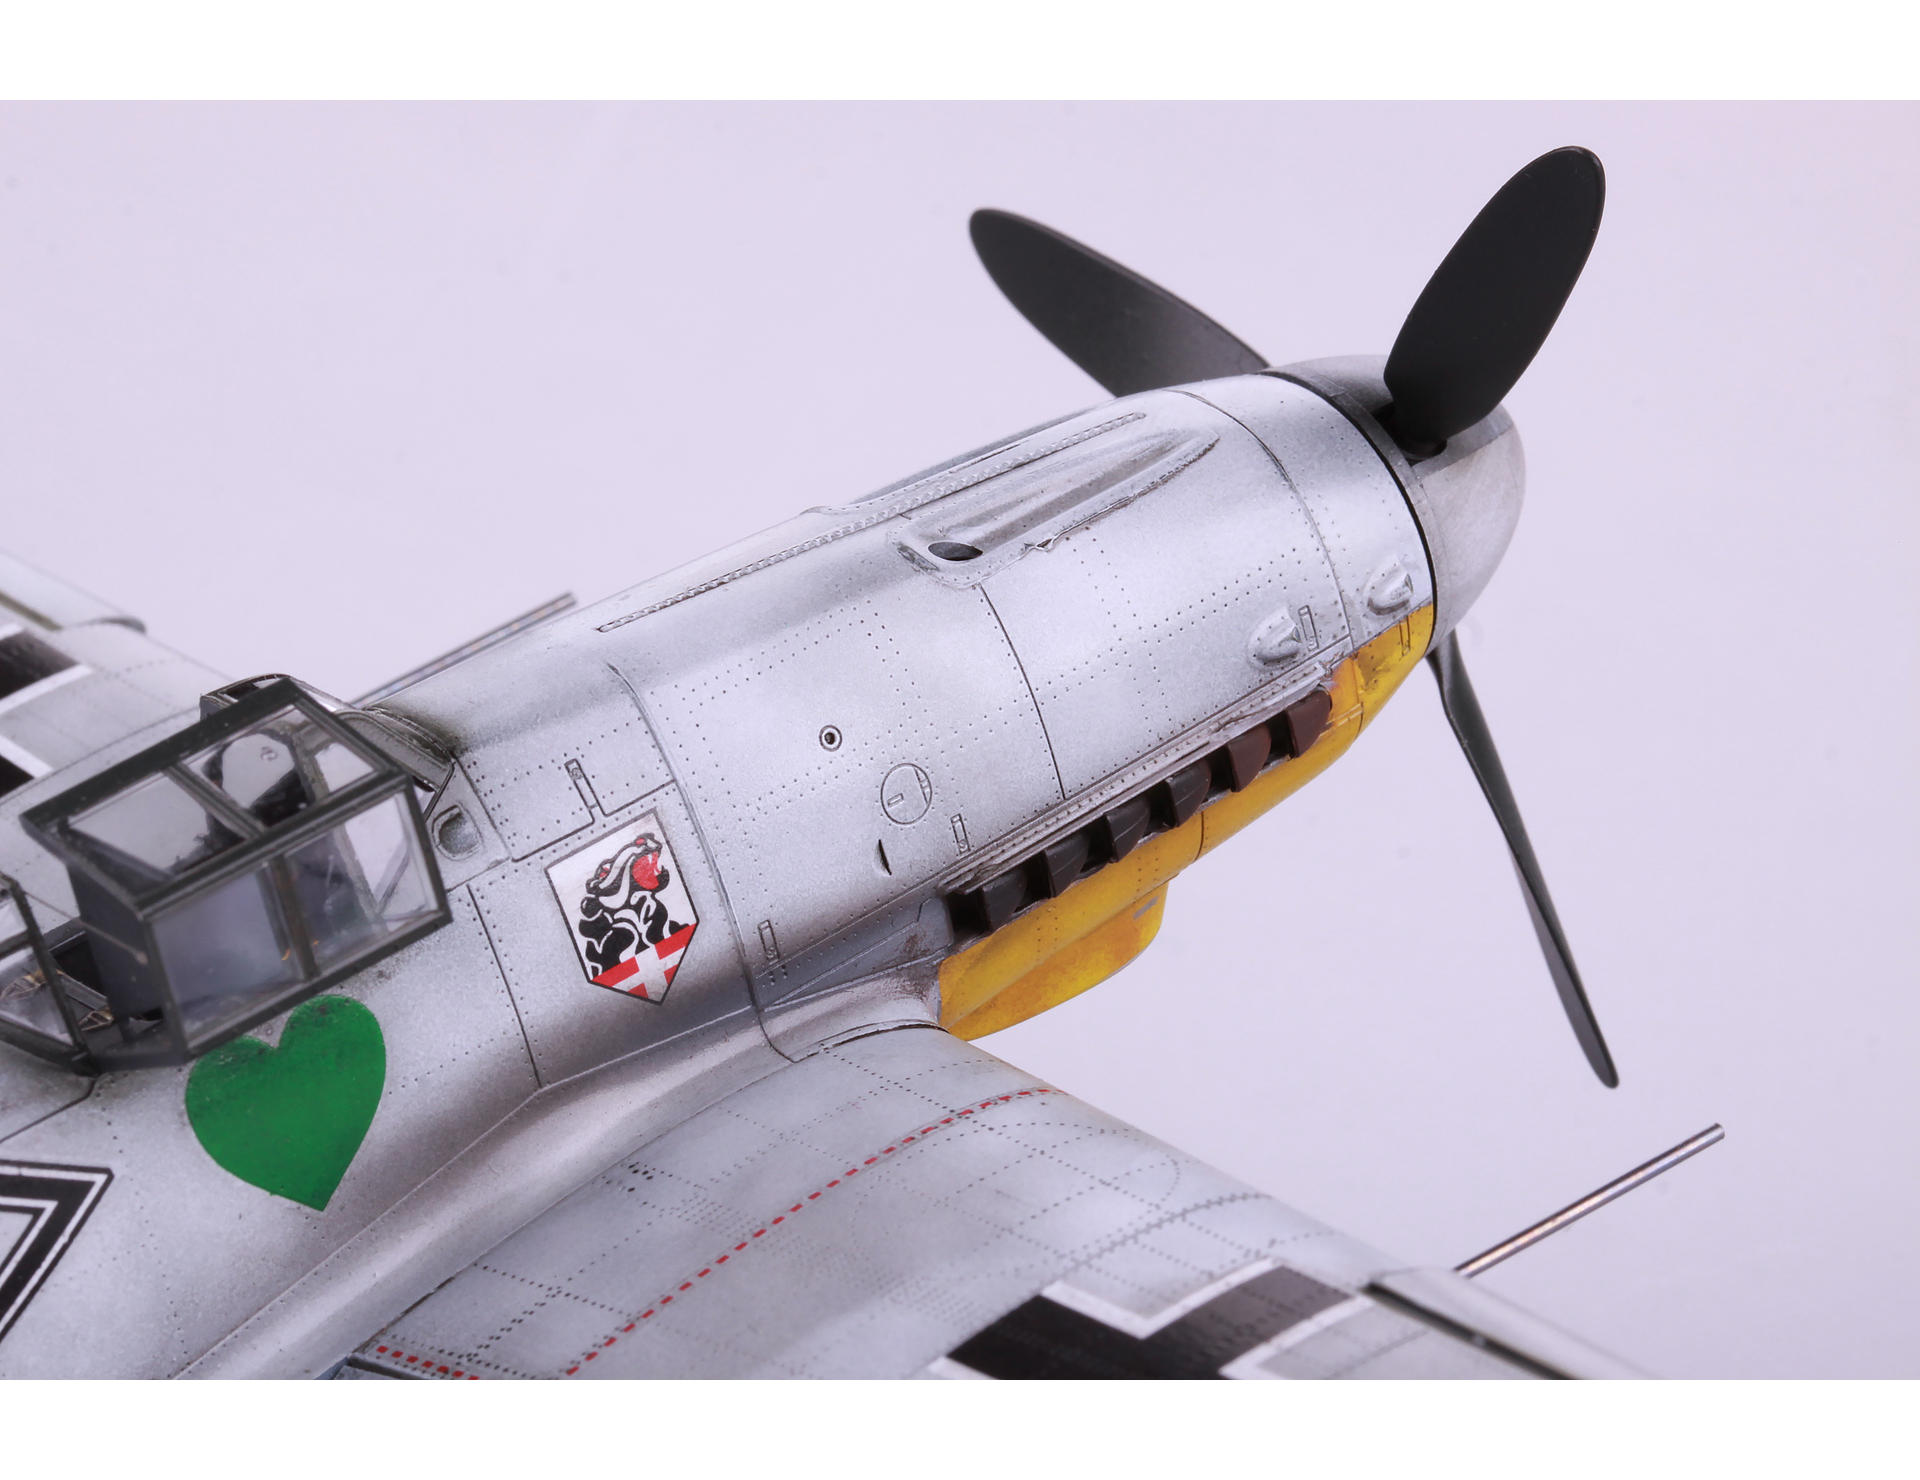 EDU82115 EDUARD MODELS 1/48 Bf109F2 Fighter Profi-Pack Plastic Kit